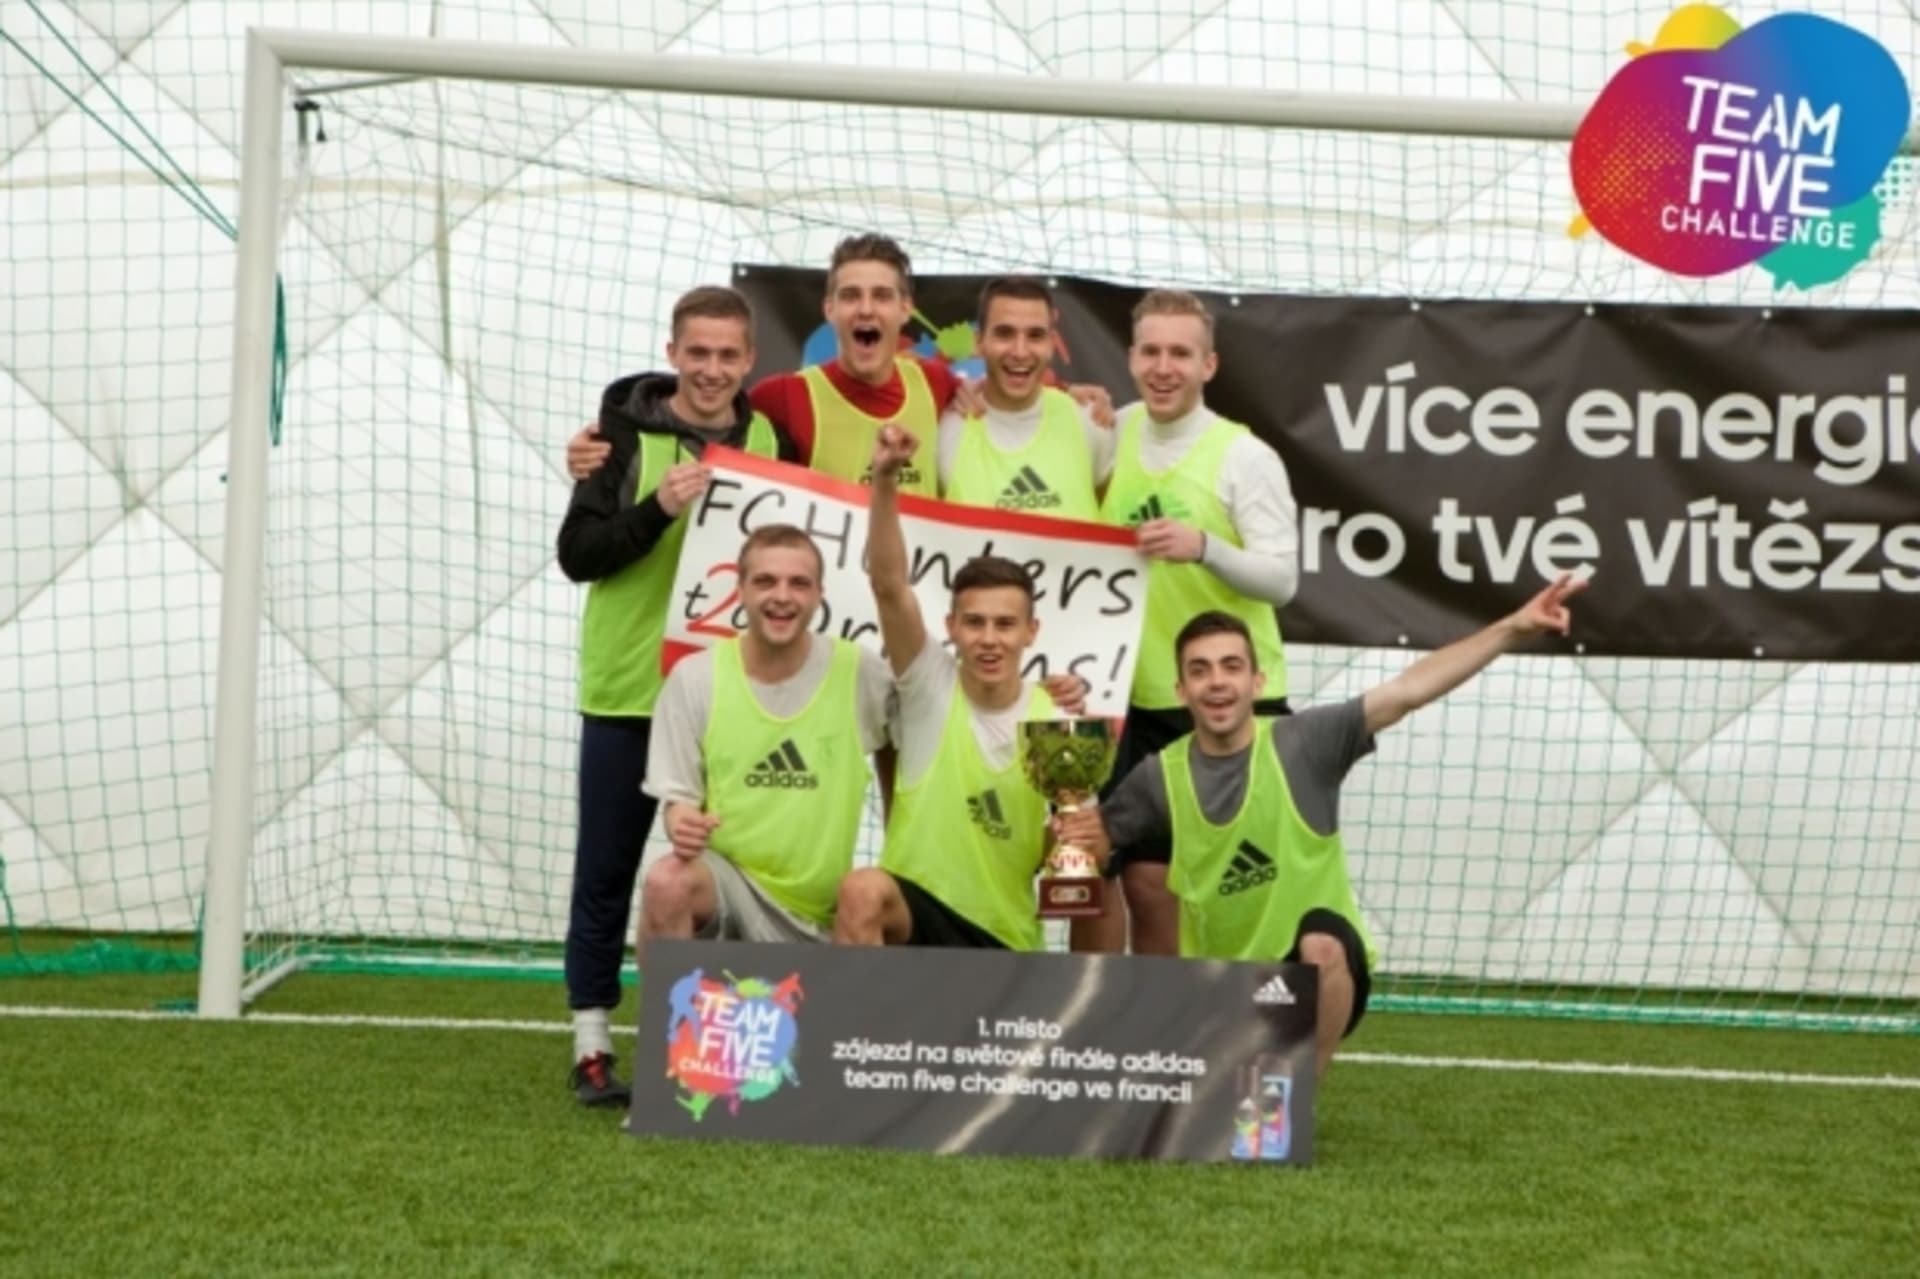 adidas Team Five Challenge – vítězný tým česko slovenského finále FC HUNTERS2DREAMS se raduje